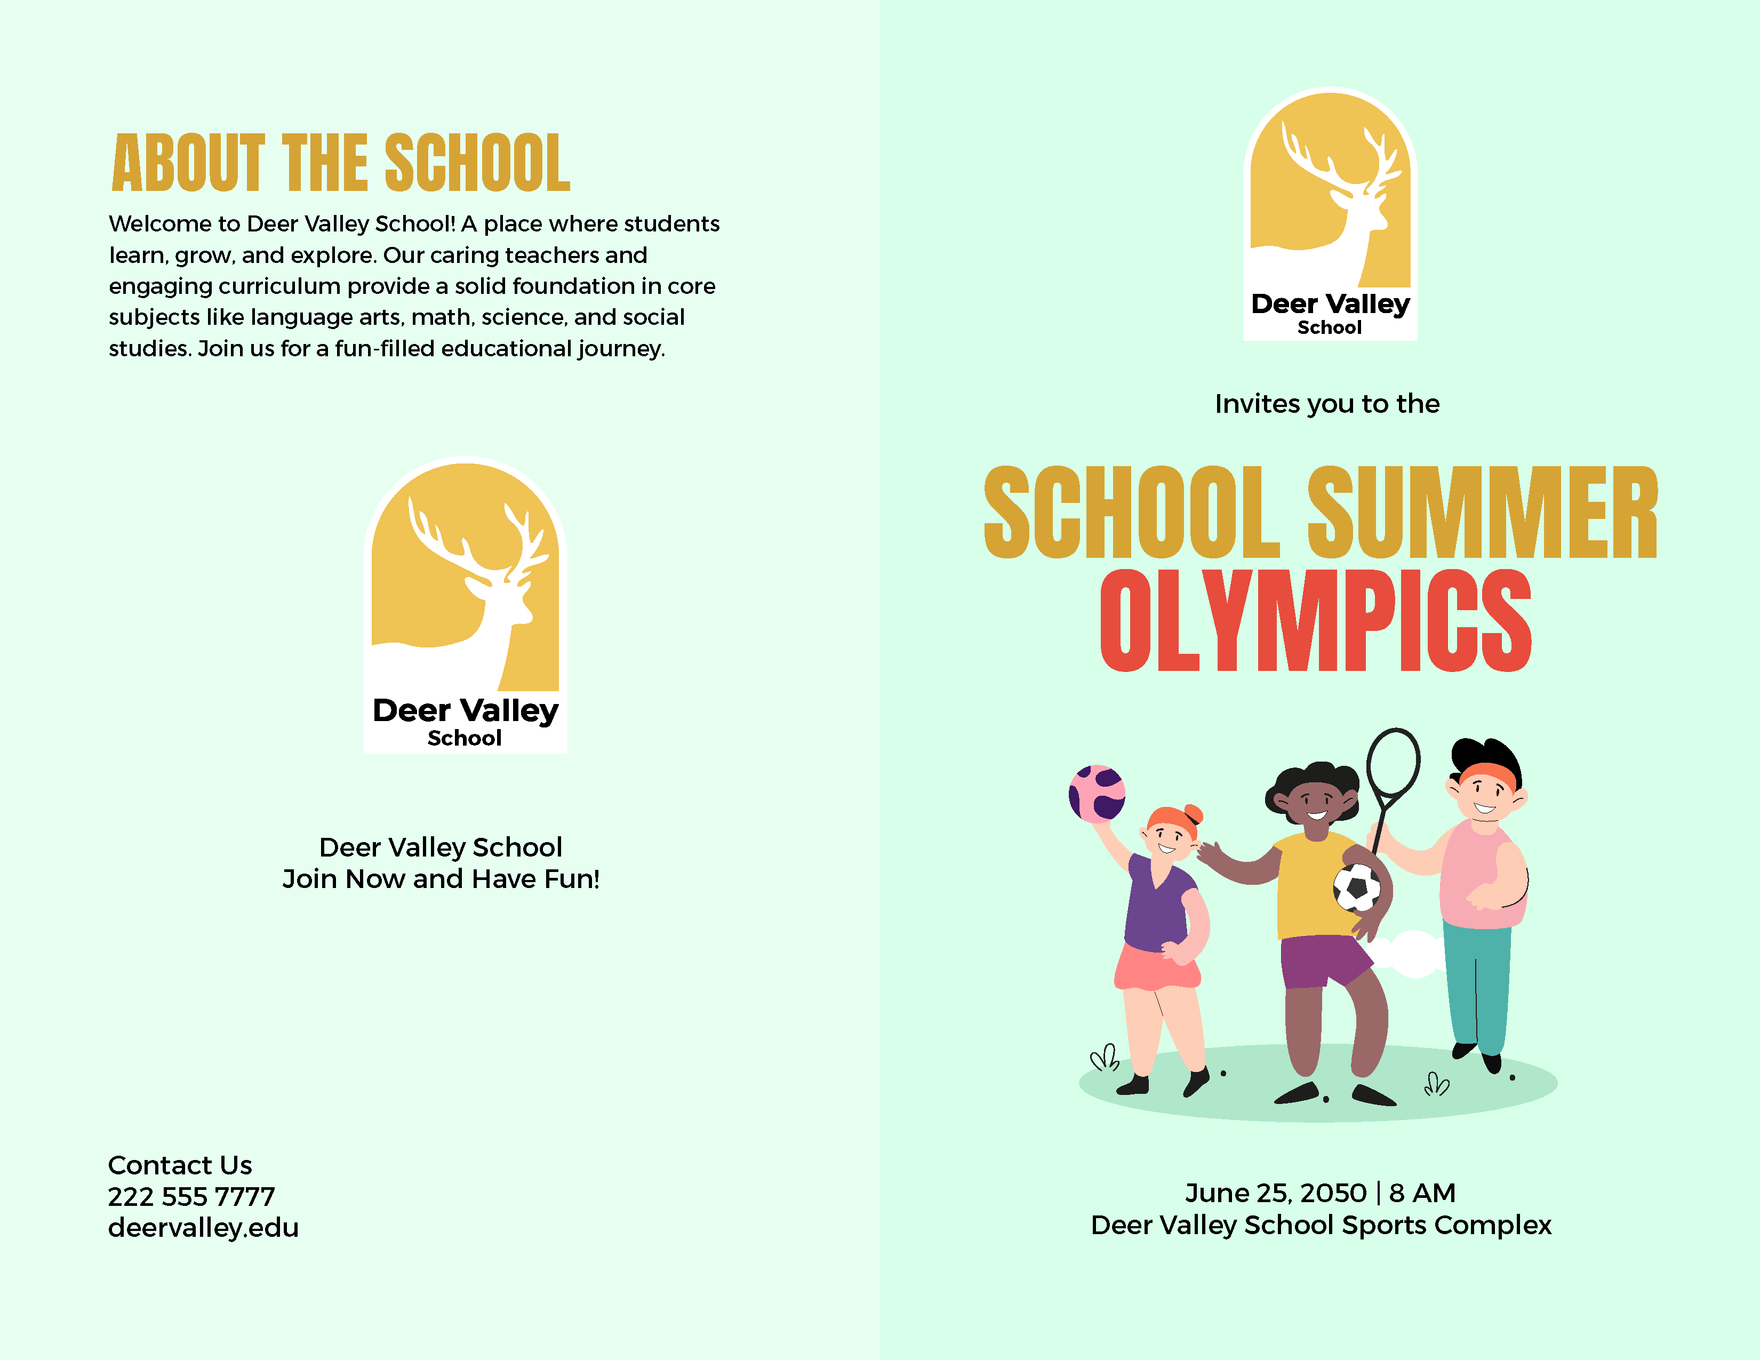 Summer Brochure